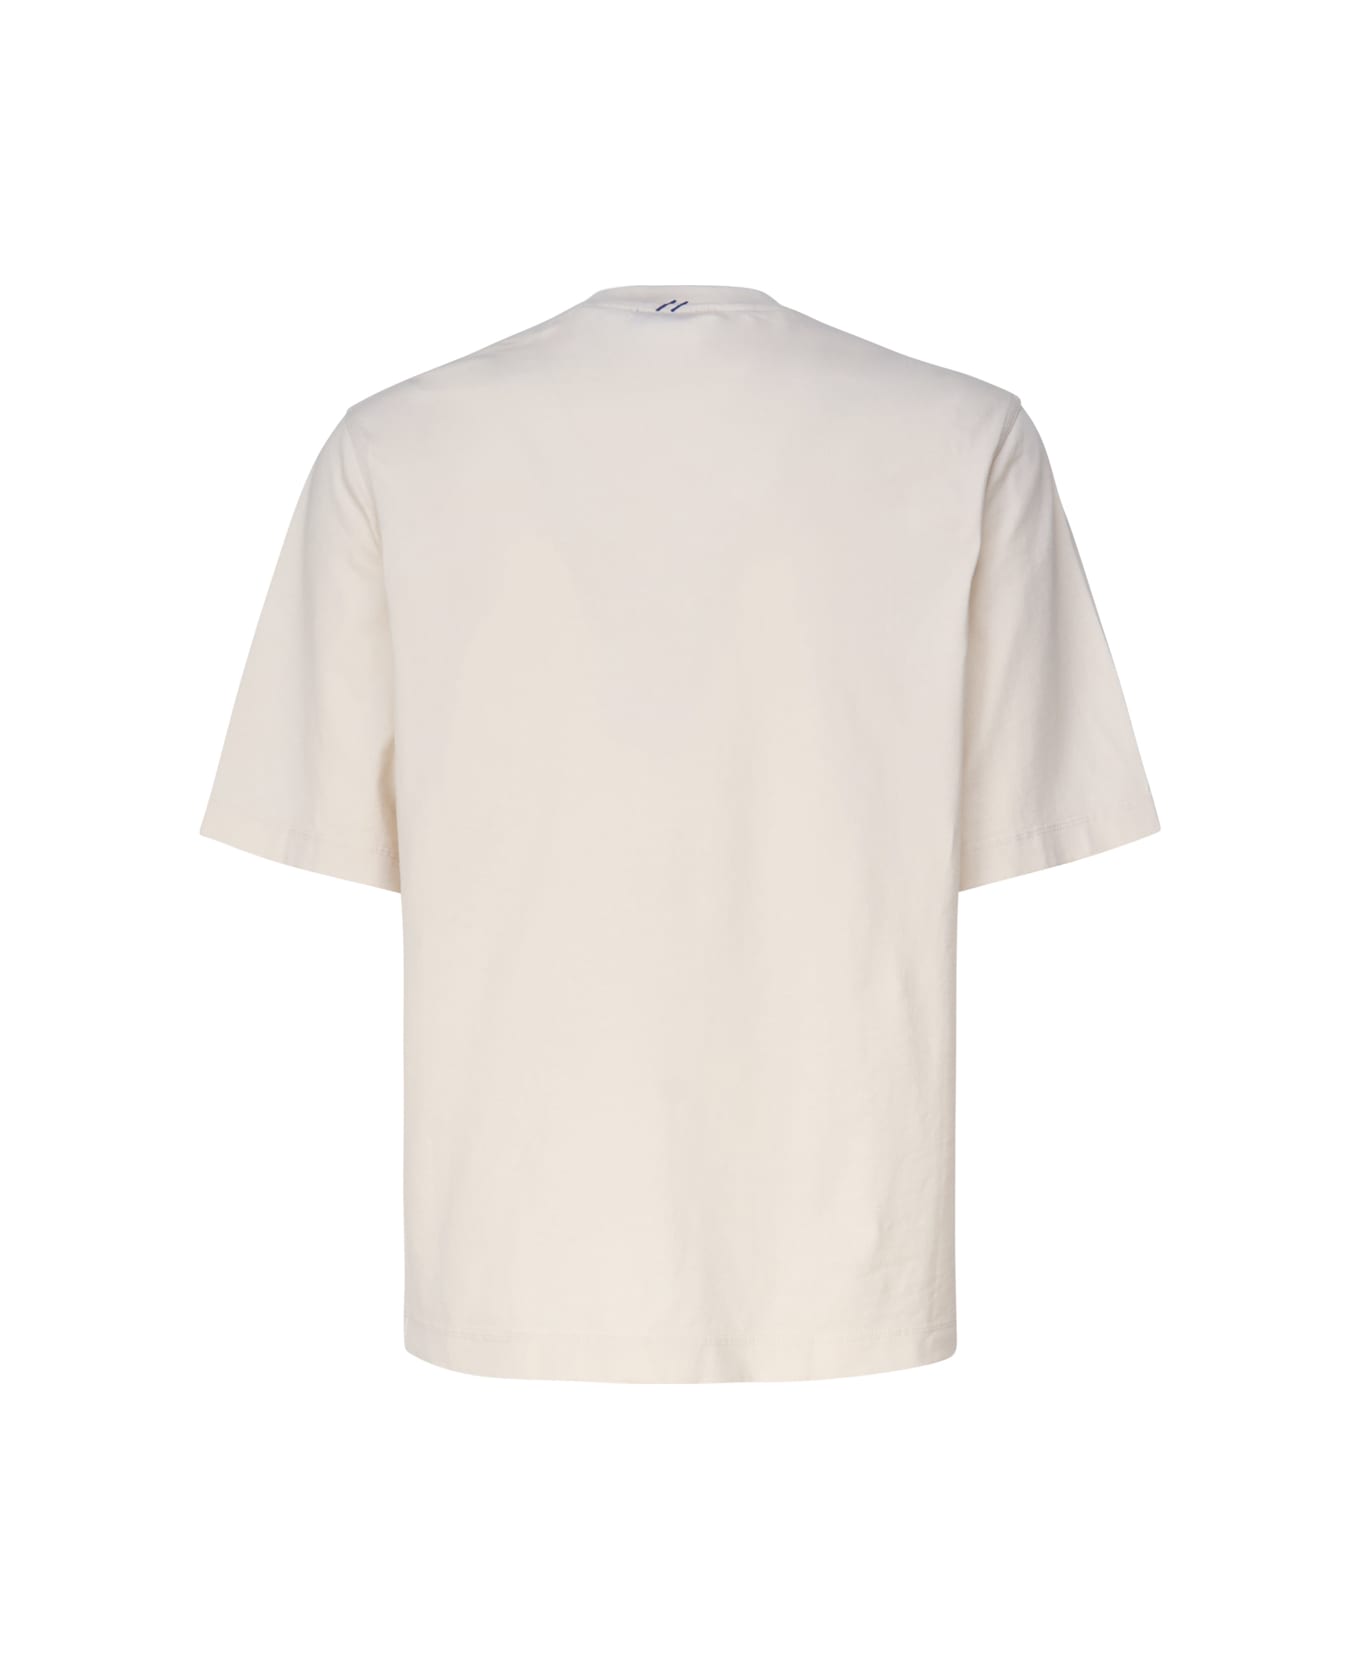 Burberry Cotton T-shirt - Soap